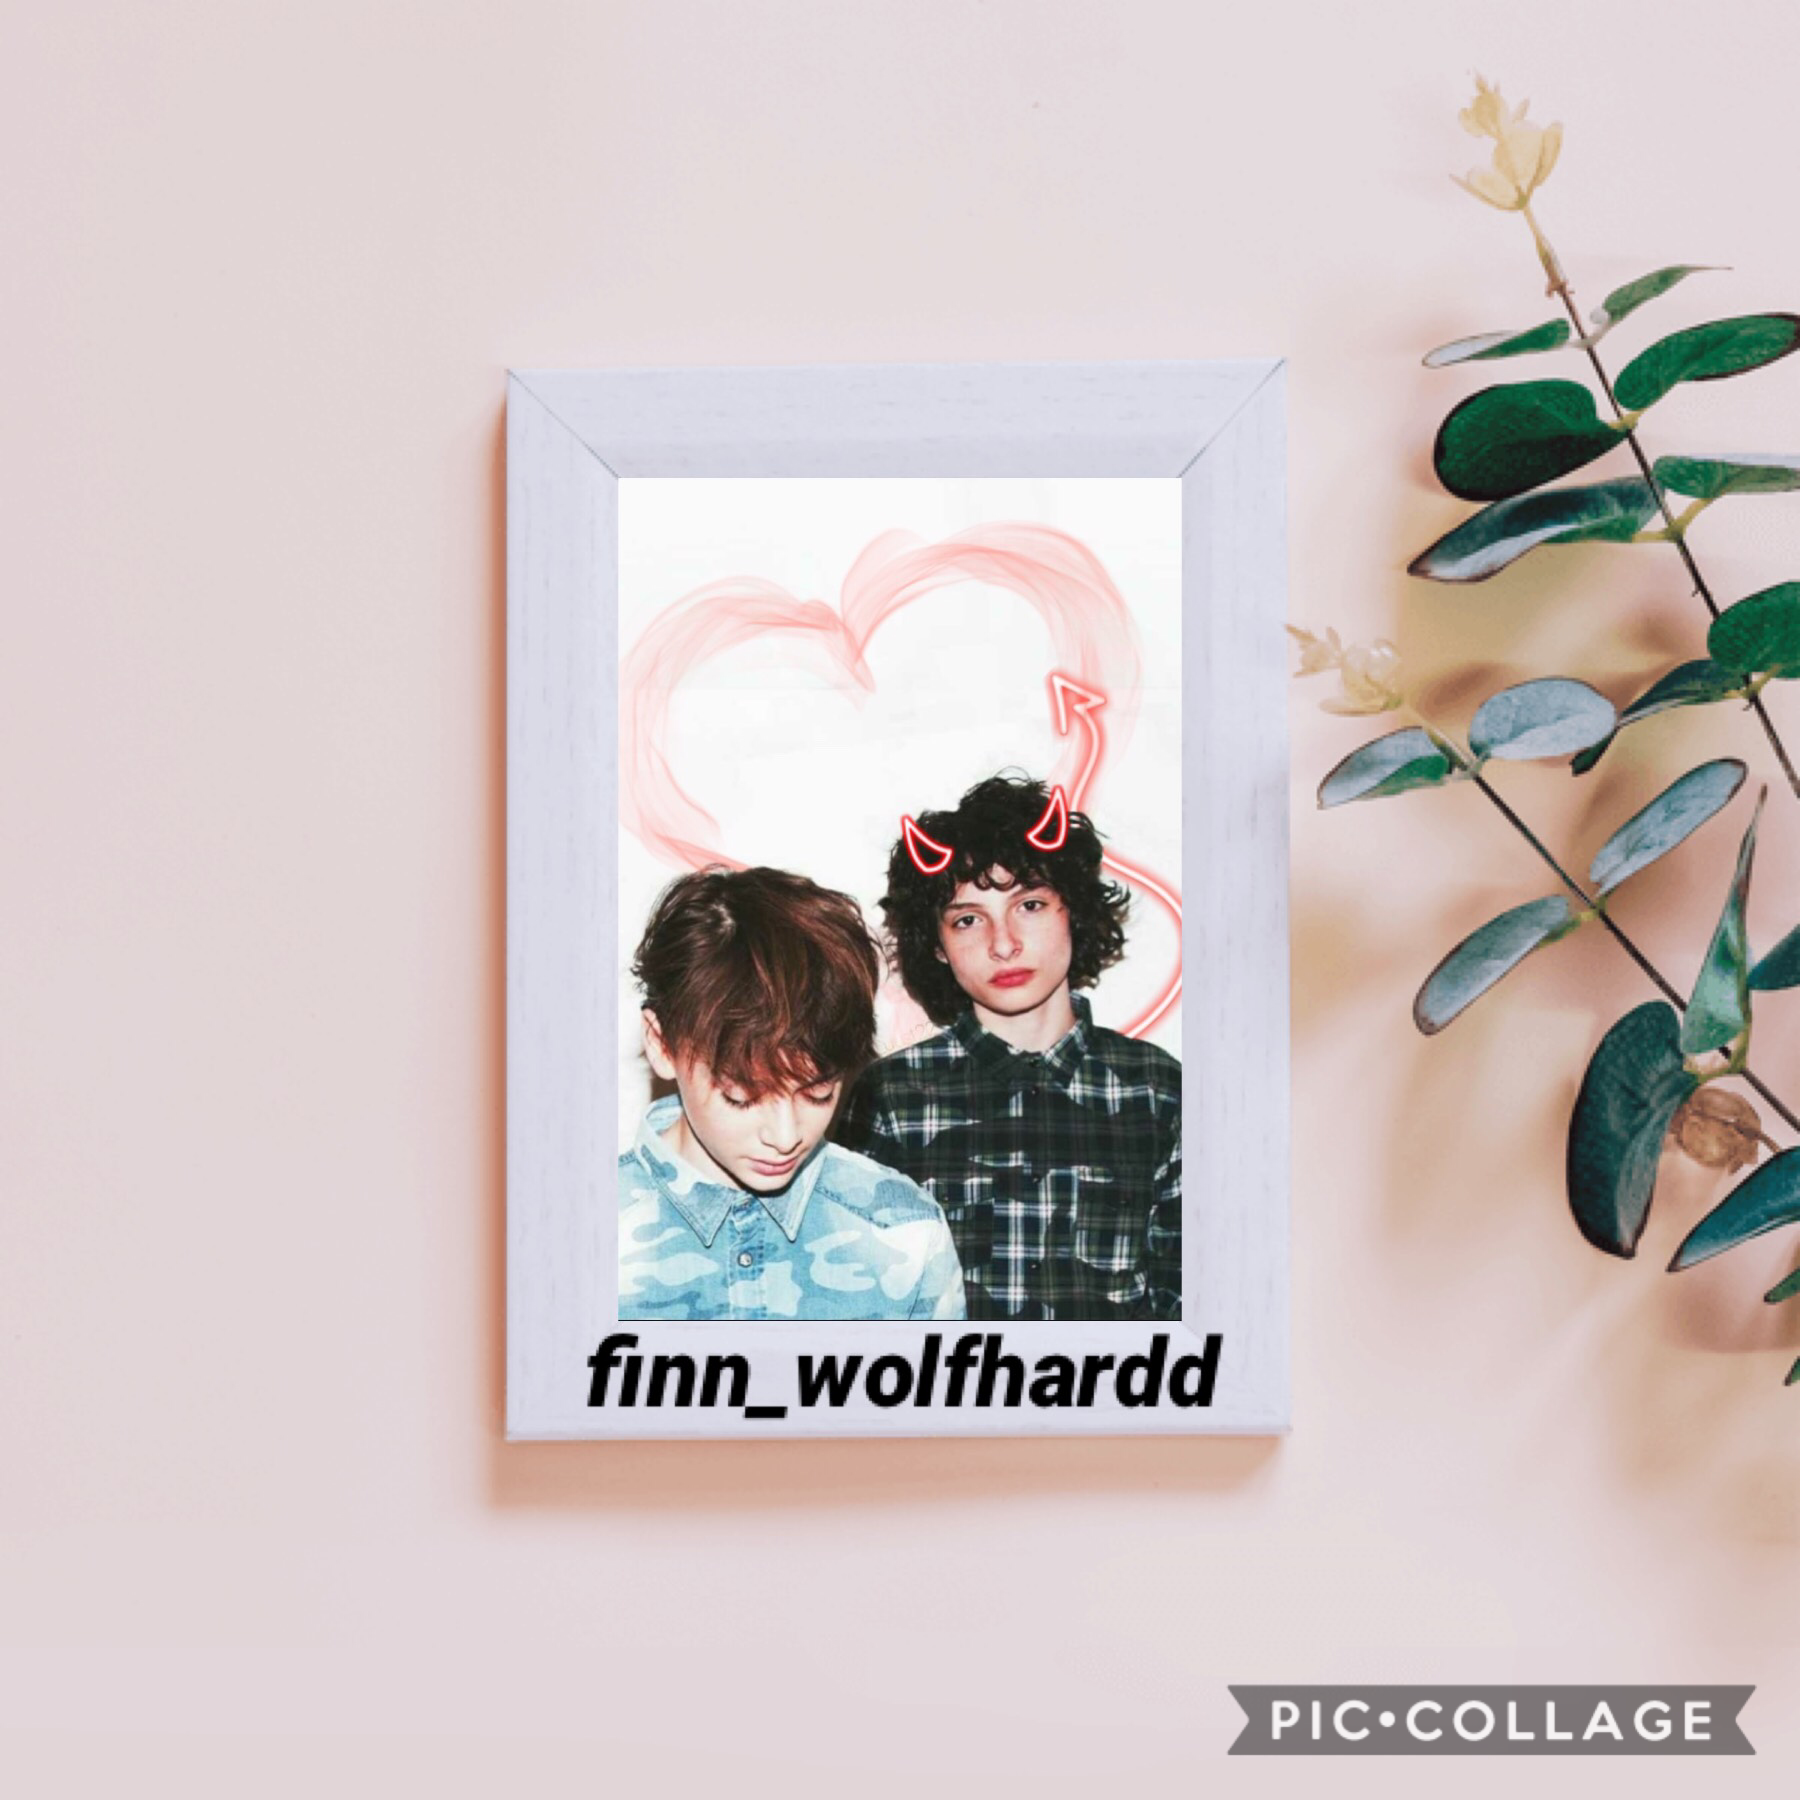 ✨Tappy✨
Finn Wolfhard is an angel 